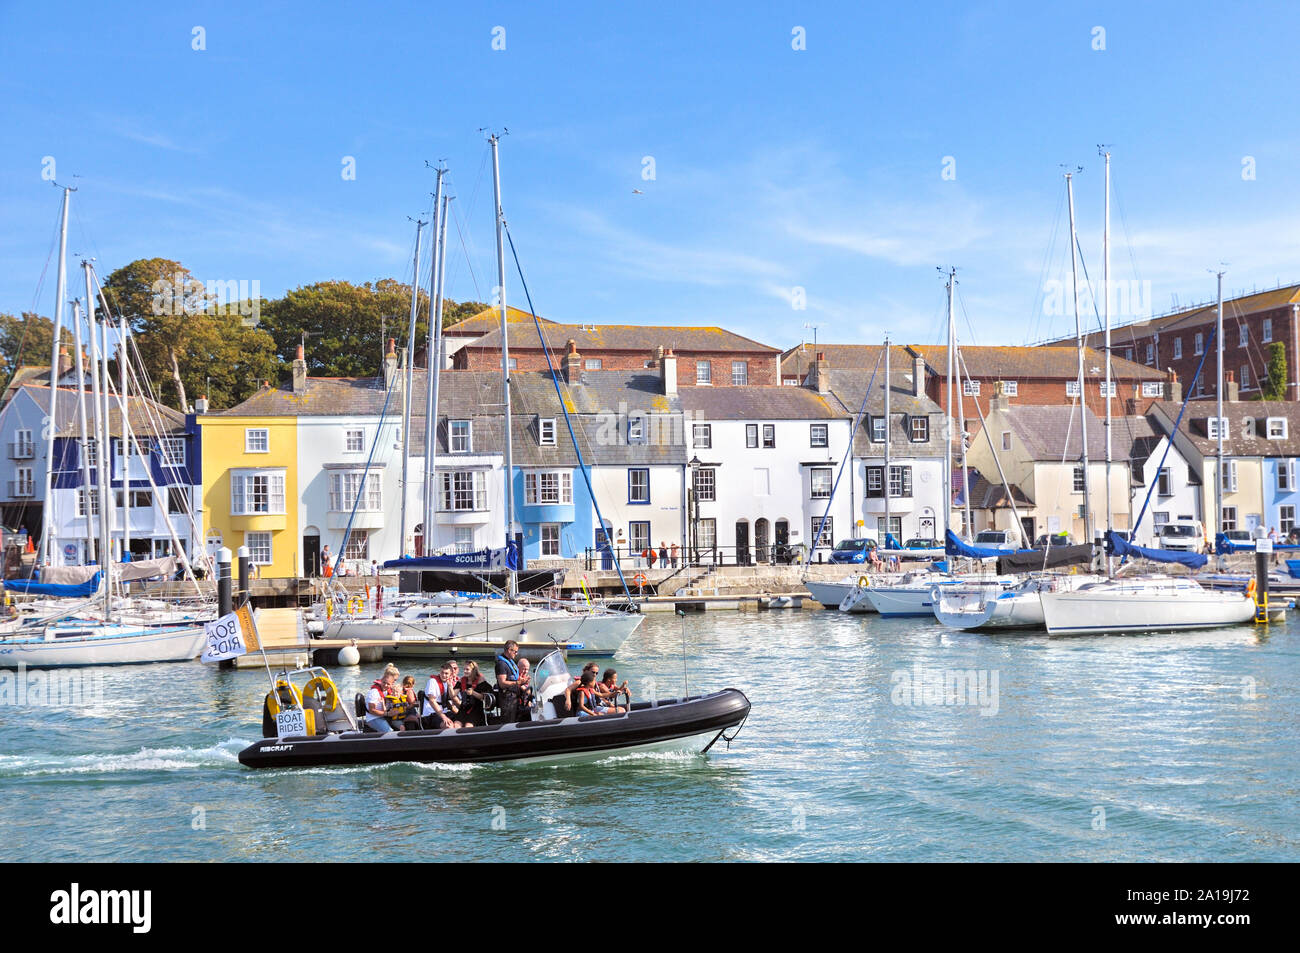 Touristen auf eine Rippe Bootsfahrt am alten Hafen vorbei an der Yachten und Reihenhäusern Hütten auf nothe Parade, Weymouth, Jurassic Coast, Dorset, England, Großbritannien Stockfoto